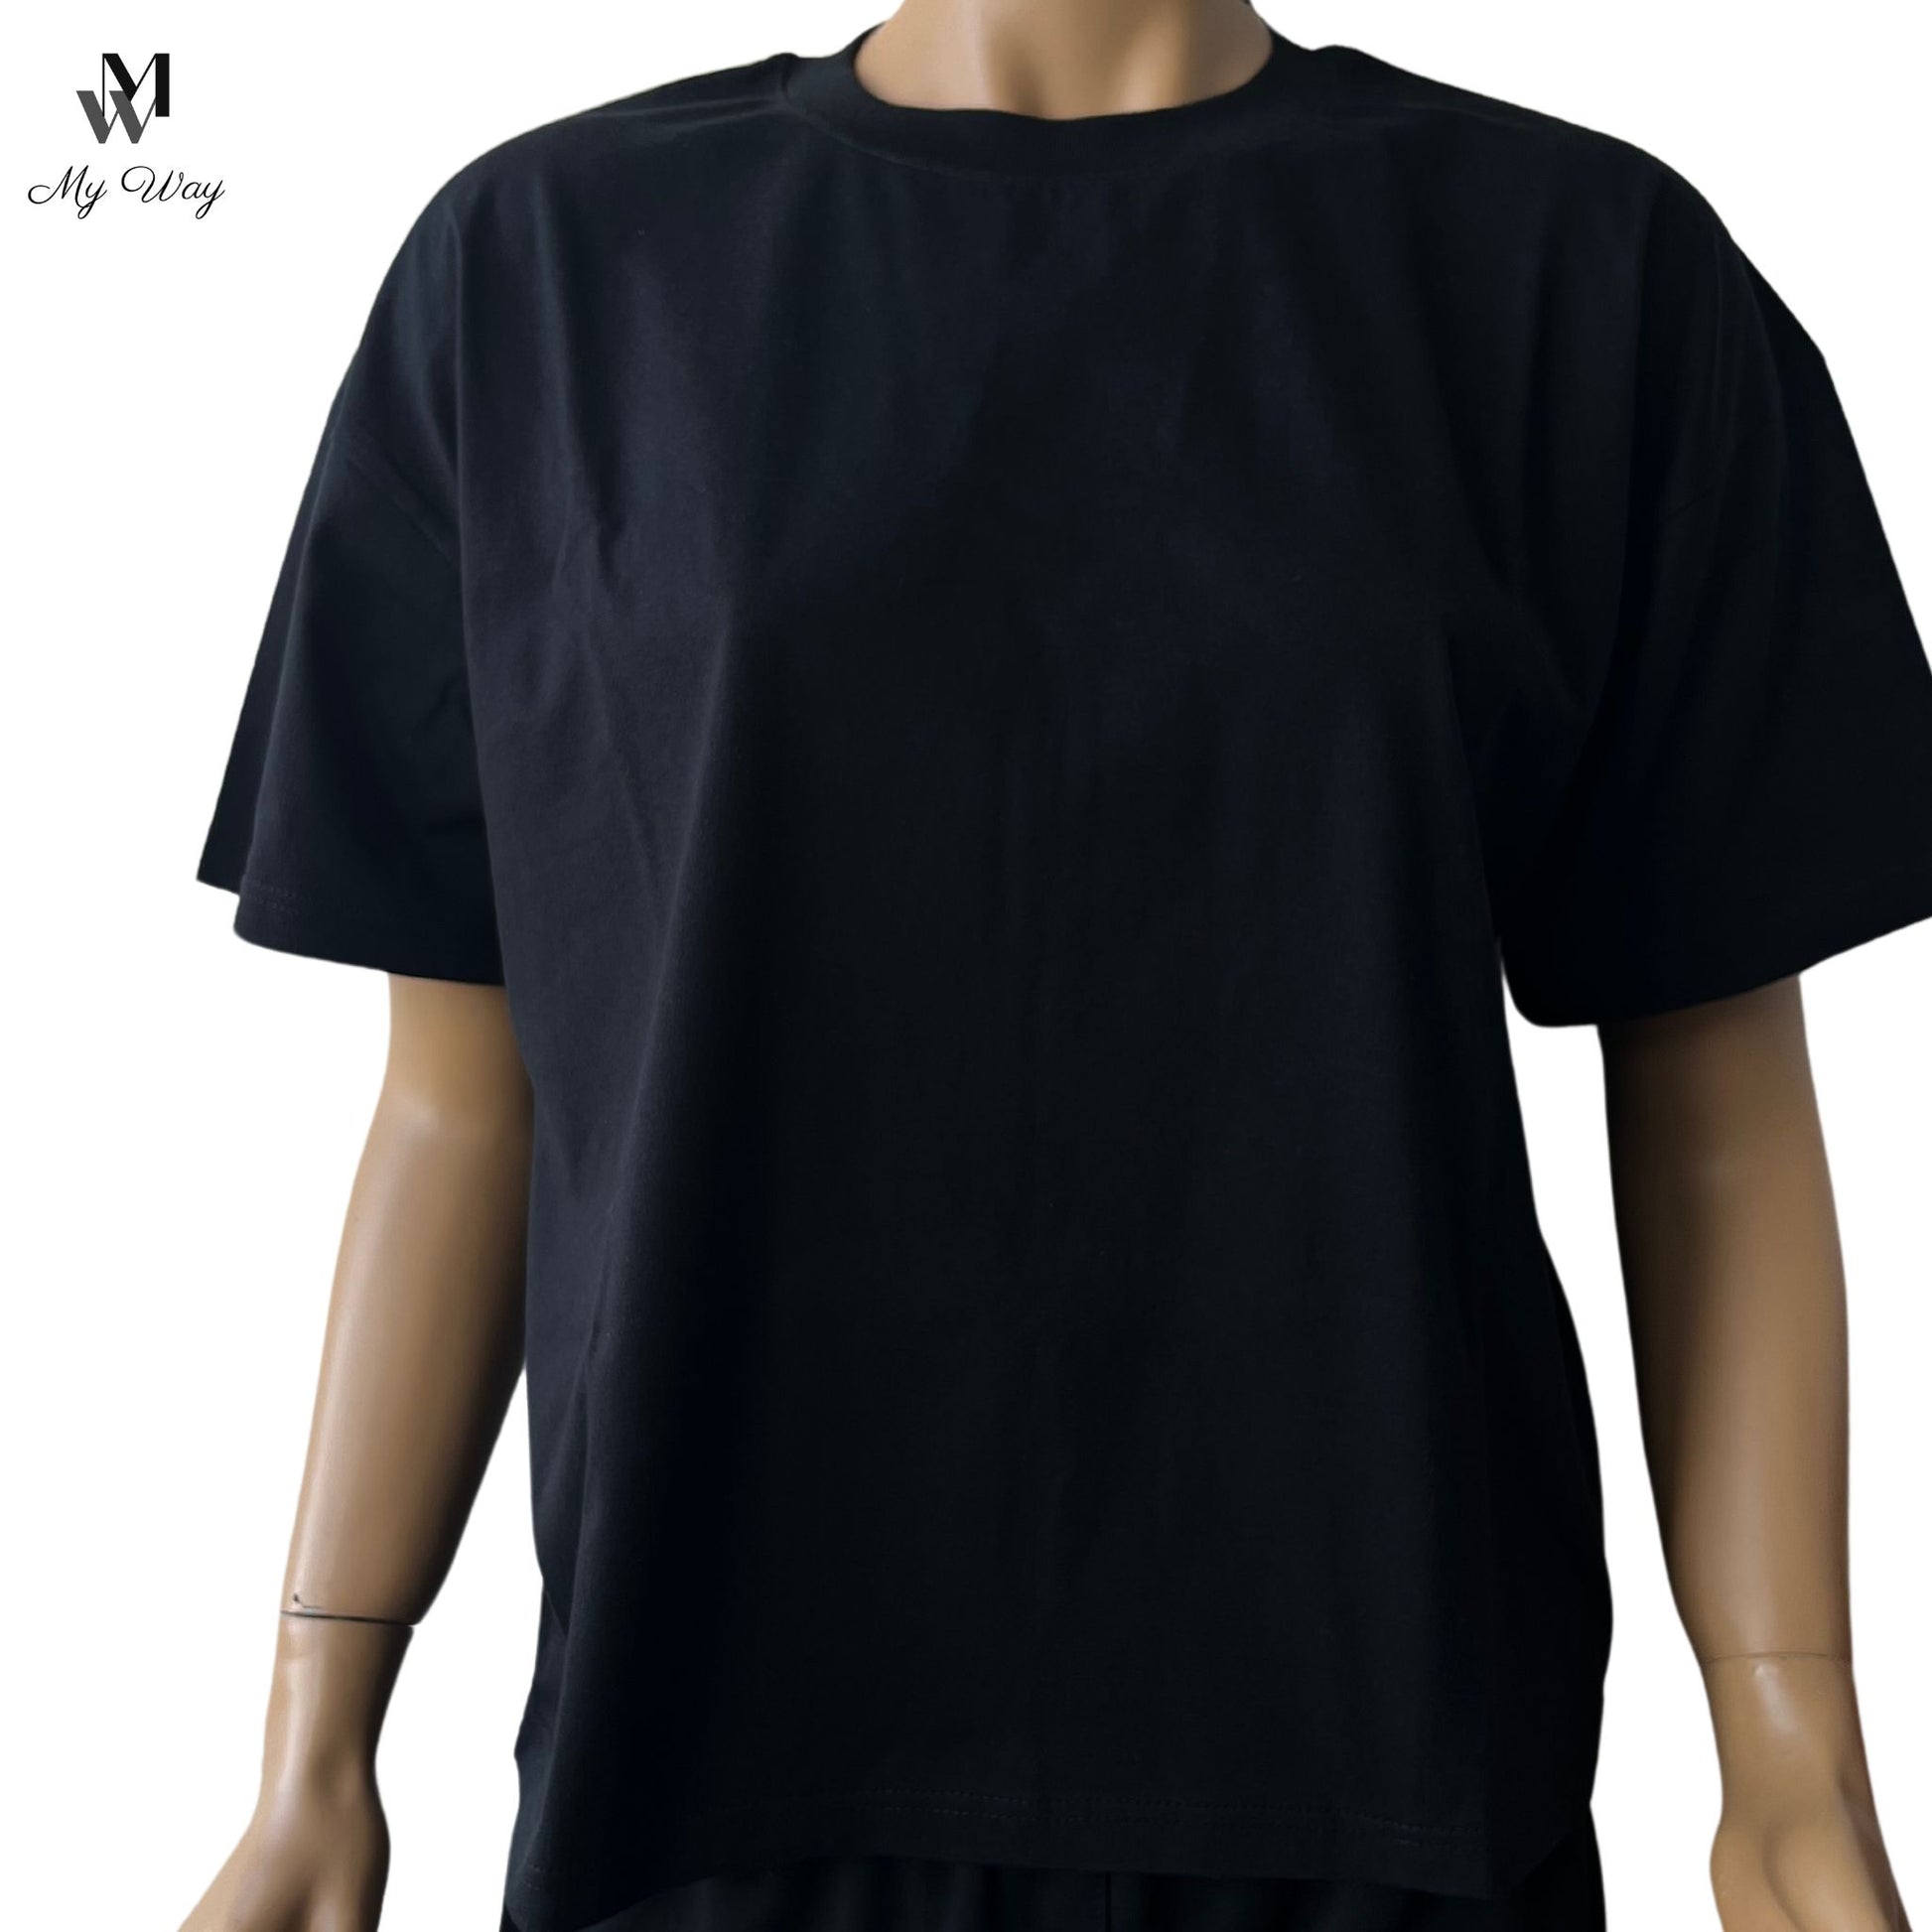 Exklusives schwarzes T-Shirt für Damen aus reiner Baumwolle shoppen